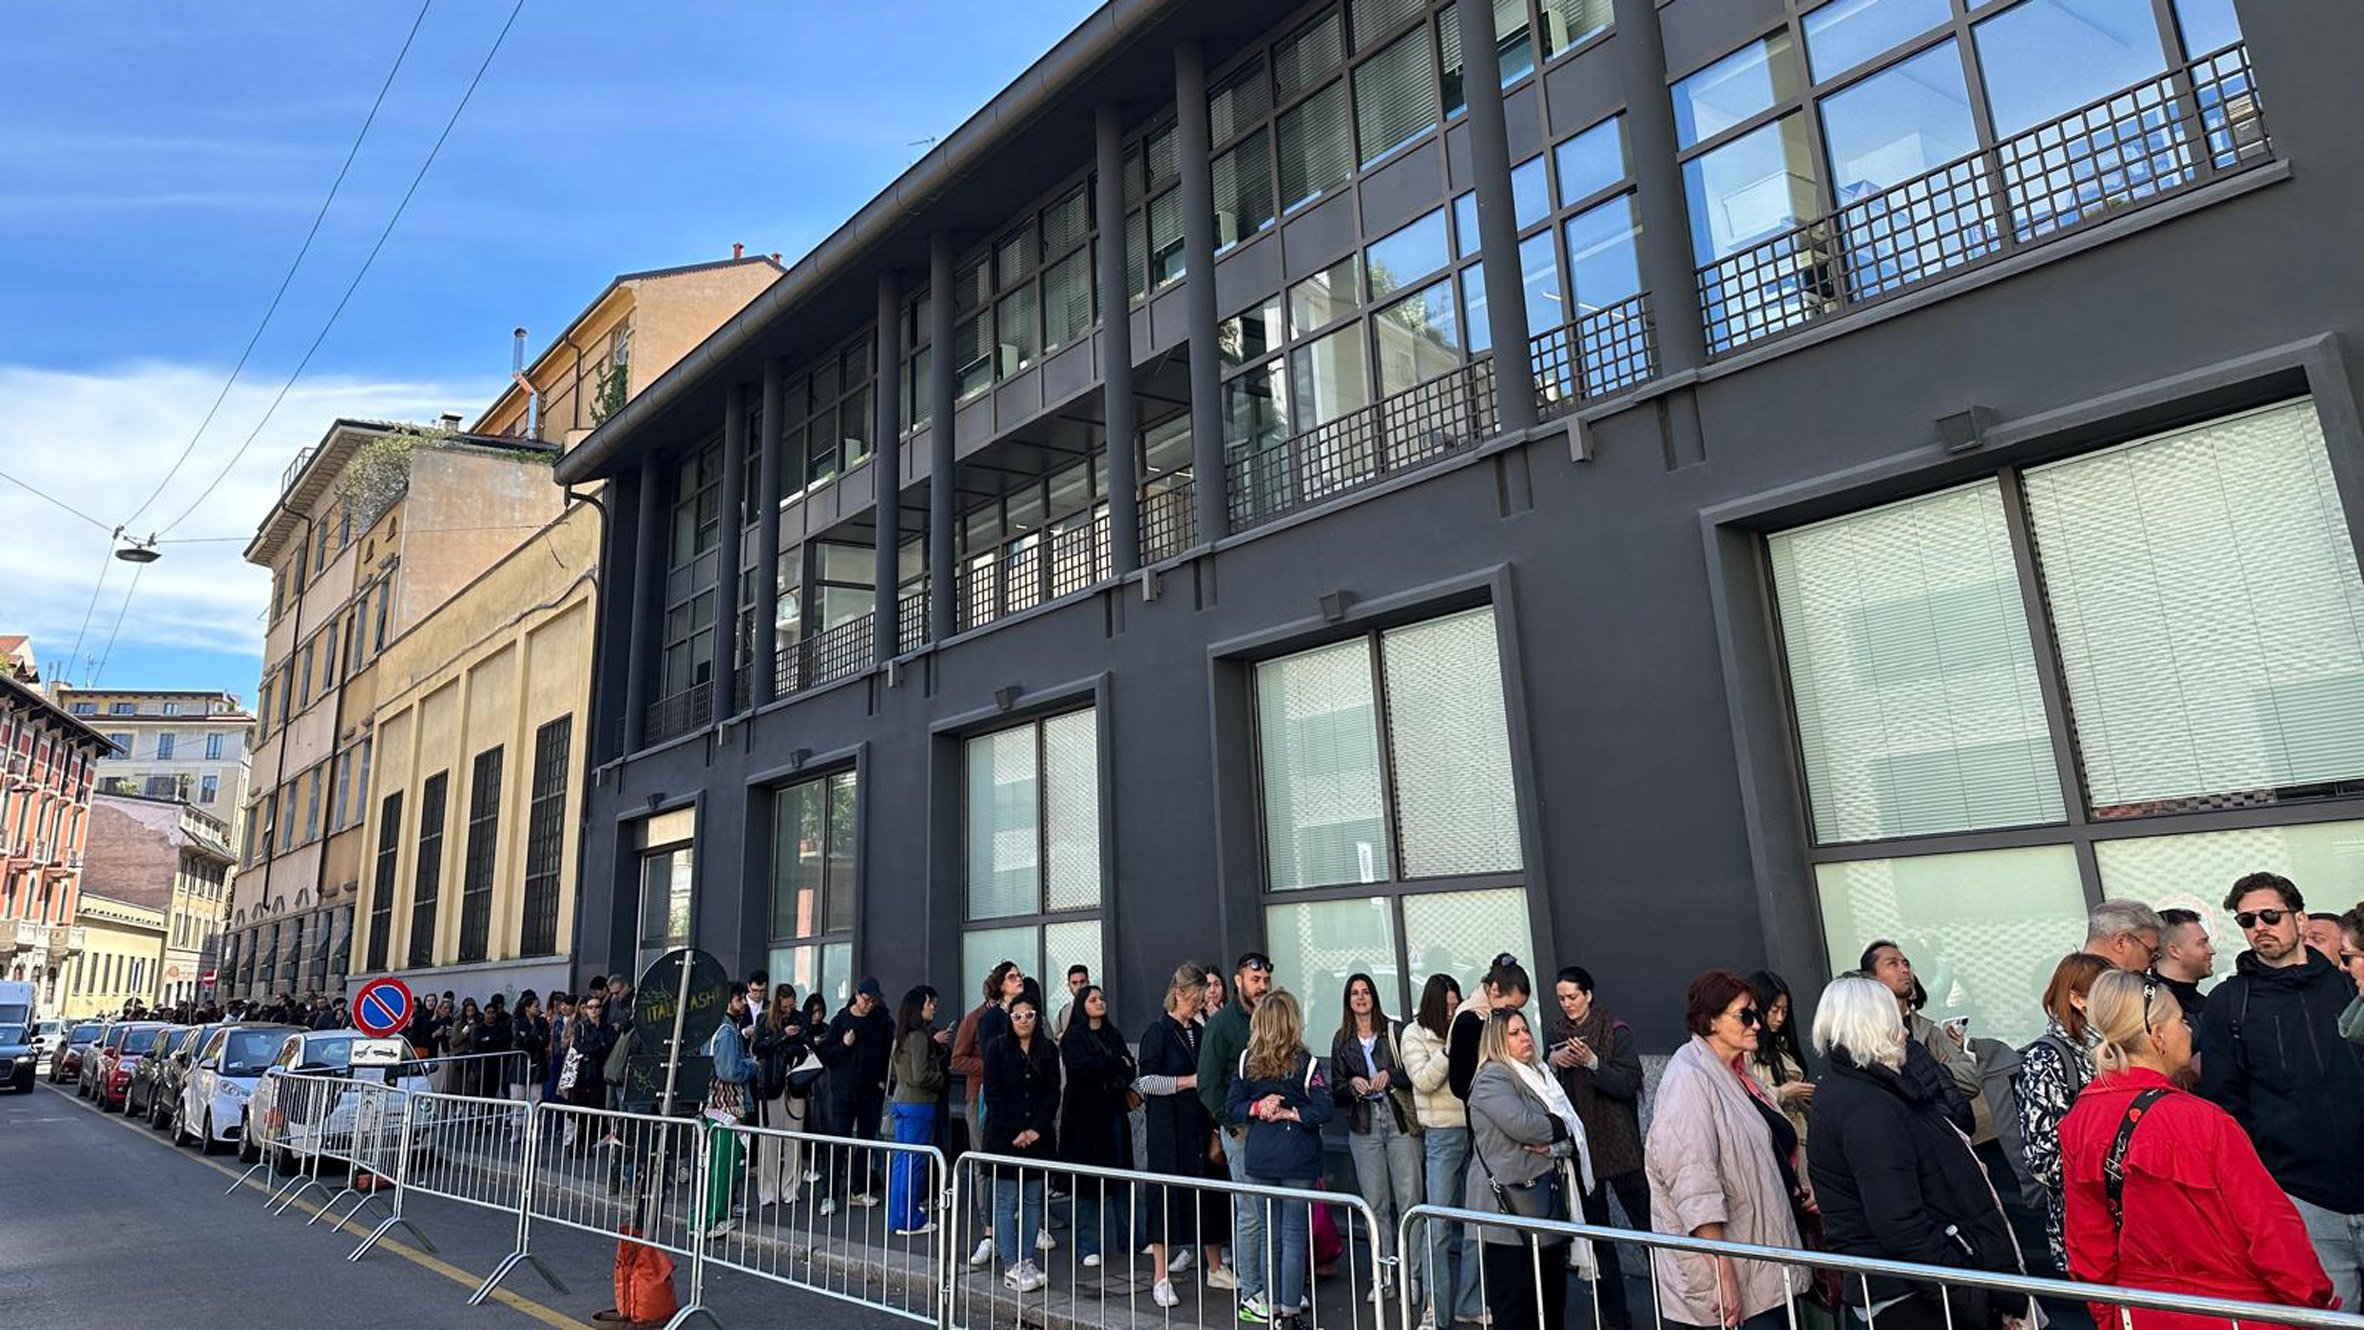 People queuing at Milan design week